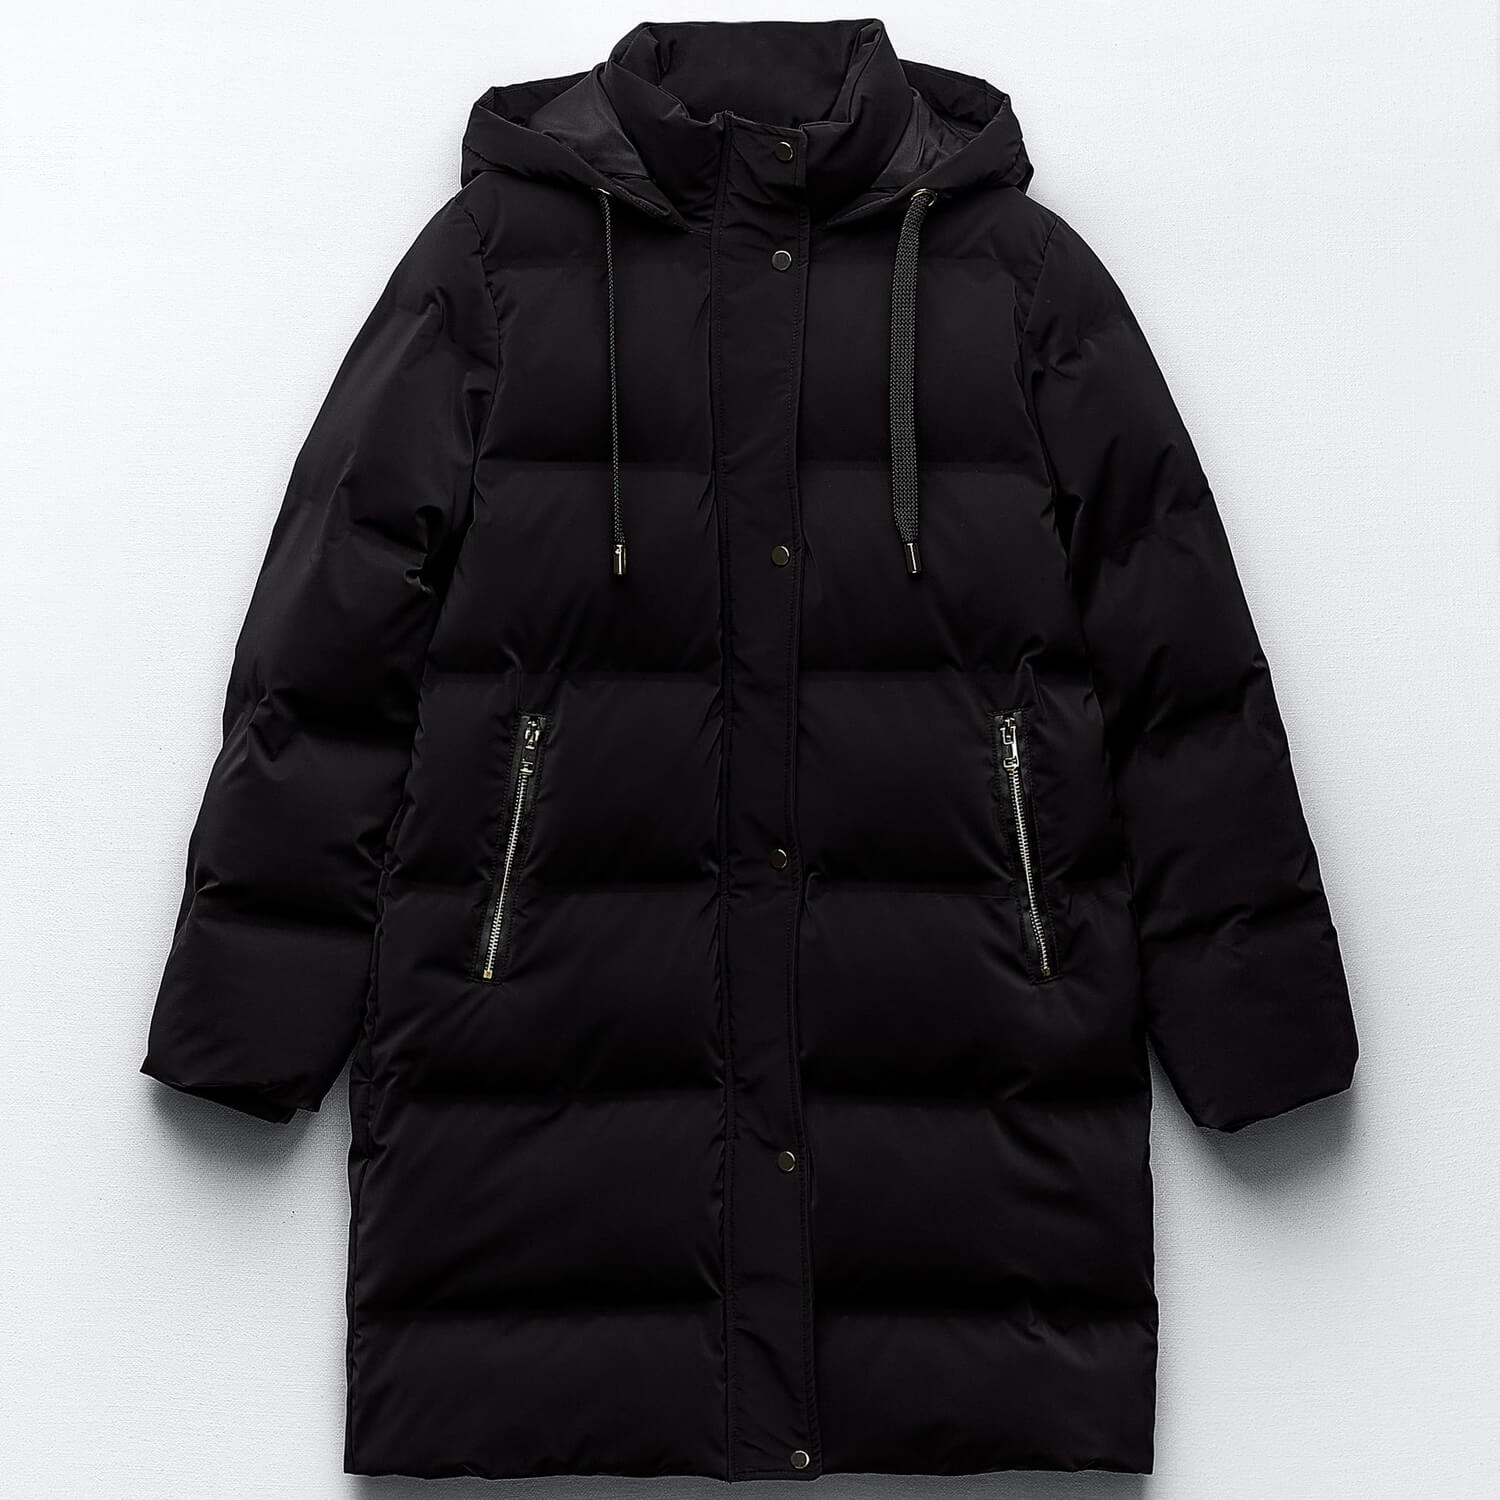 Куртка-анорак Zara Hooded With Wind Protection, черный толстовка artem krivda оверсайз средней длины трикотажная карманы капюшон карманы размер onesize черный